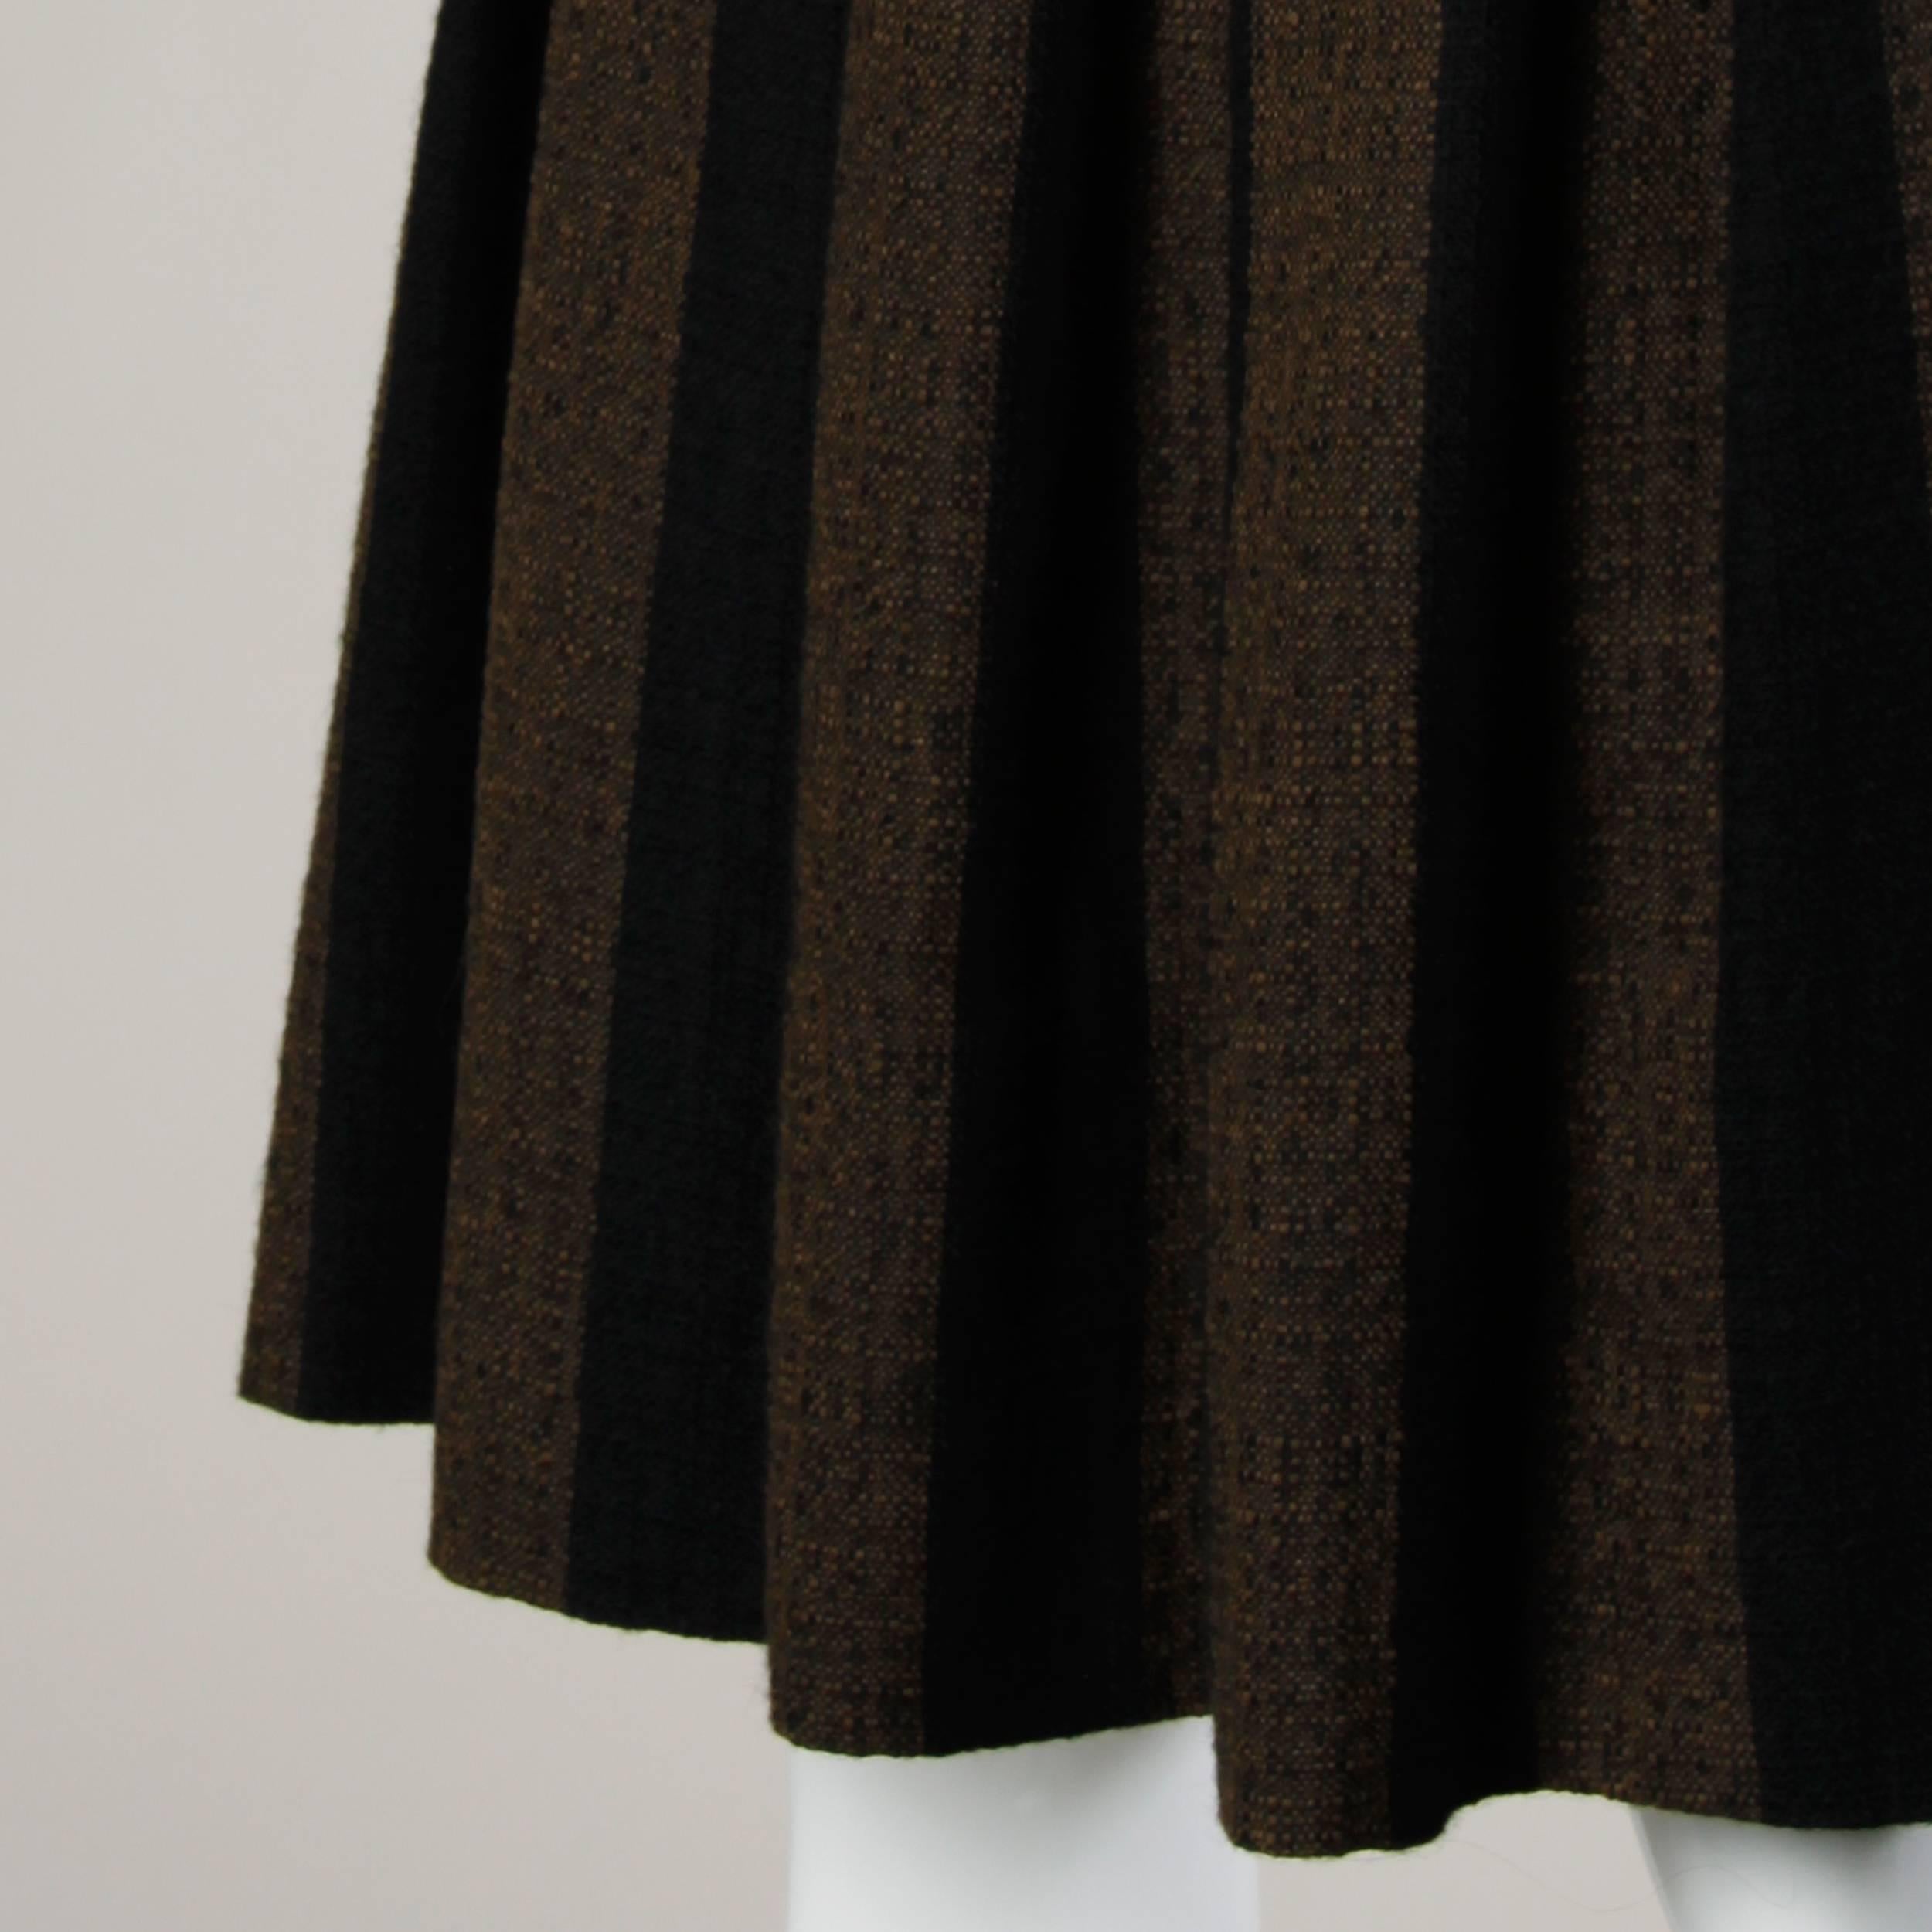 Jupe vintage des années 1960 en laine tissée souple marron et noire avec plis creux.

Détails :

Non doublé
Fermeture à bouton et zip métallique au dos
Taille marquée : Non marqué
Taille estimée : XS
Couleur : marron/noir
Tissu : 100% laine